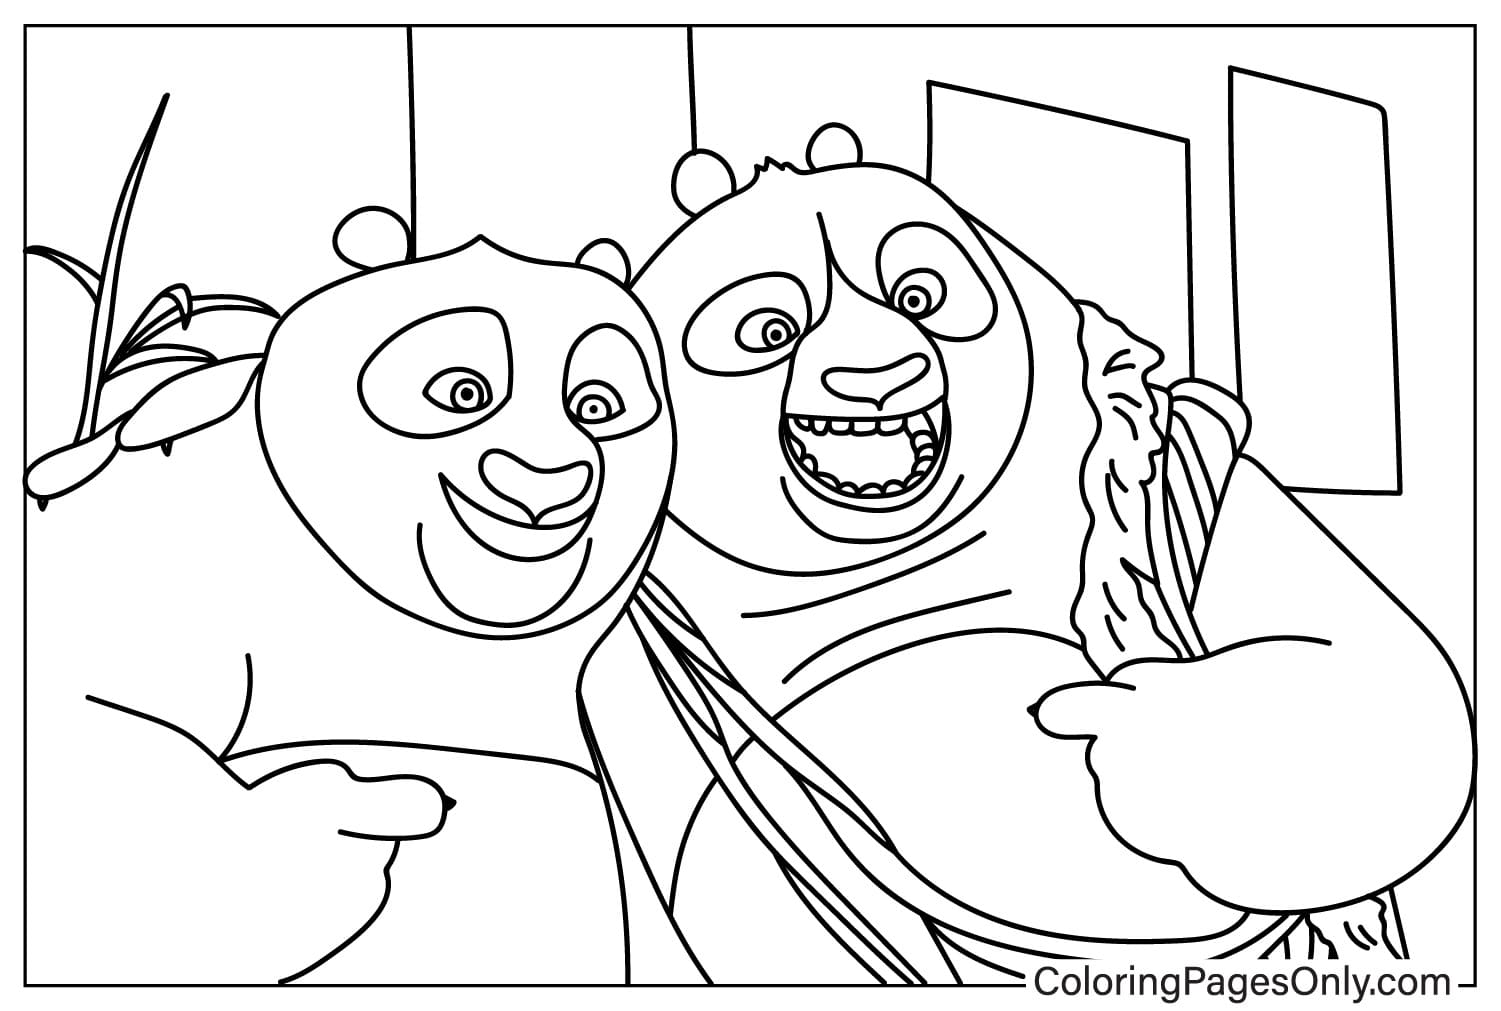 Раскраска По и папа из мультфильма «Кунг-фу Панда»